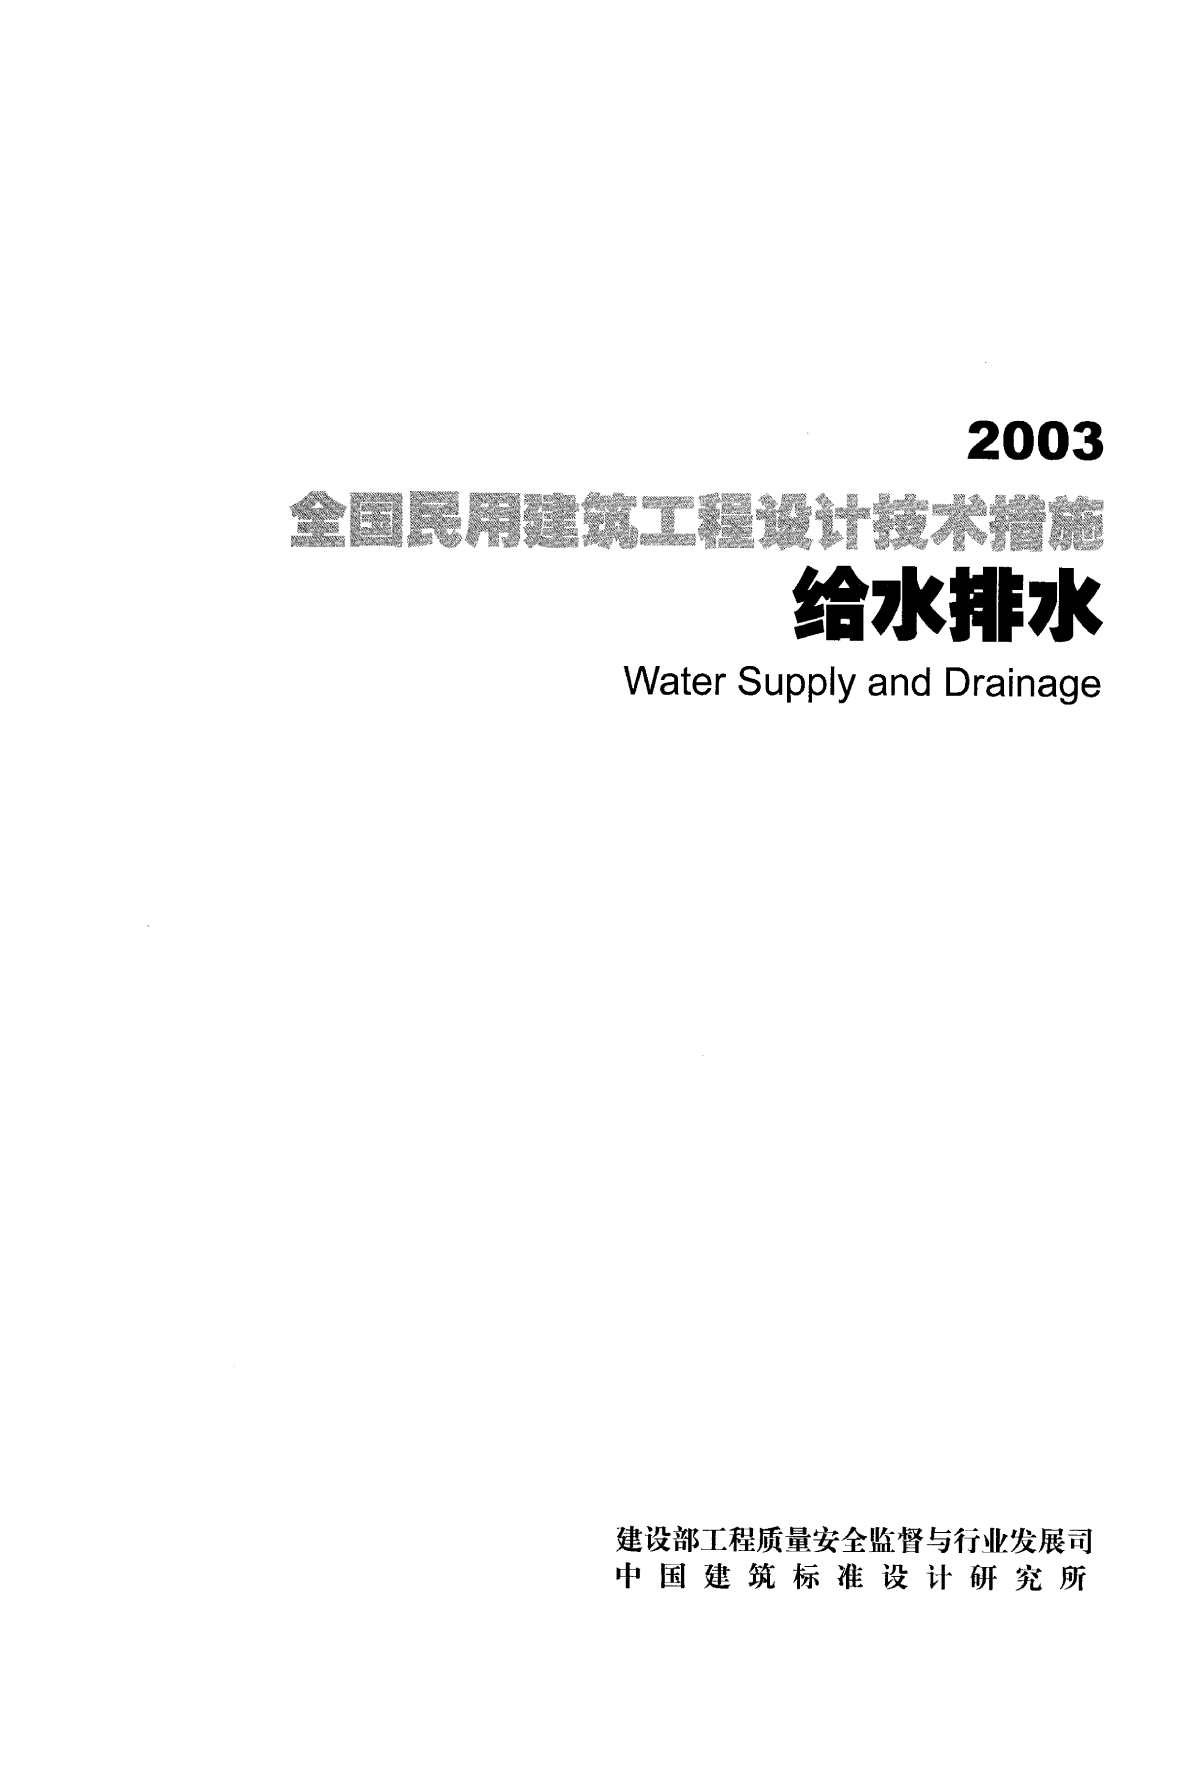 全国民用建筑工程设计技术措施-给水排水-2003